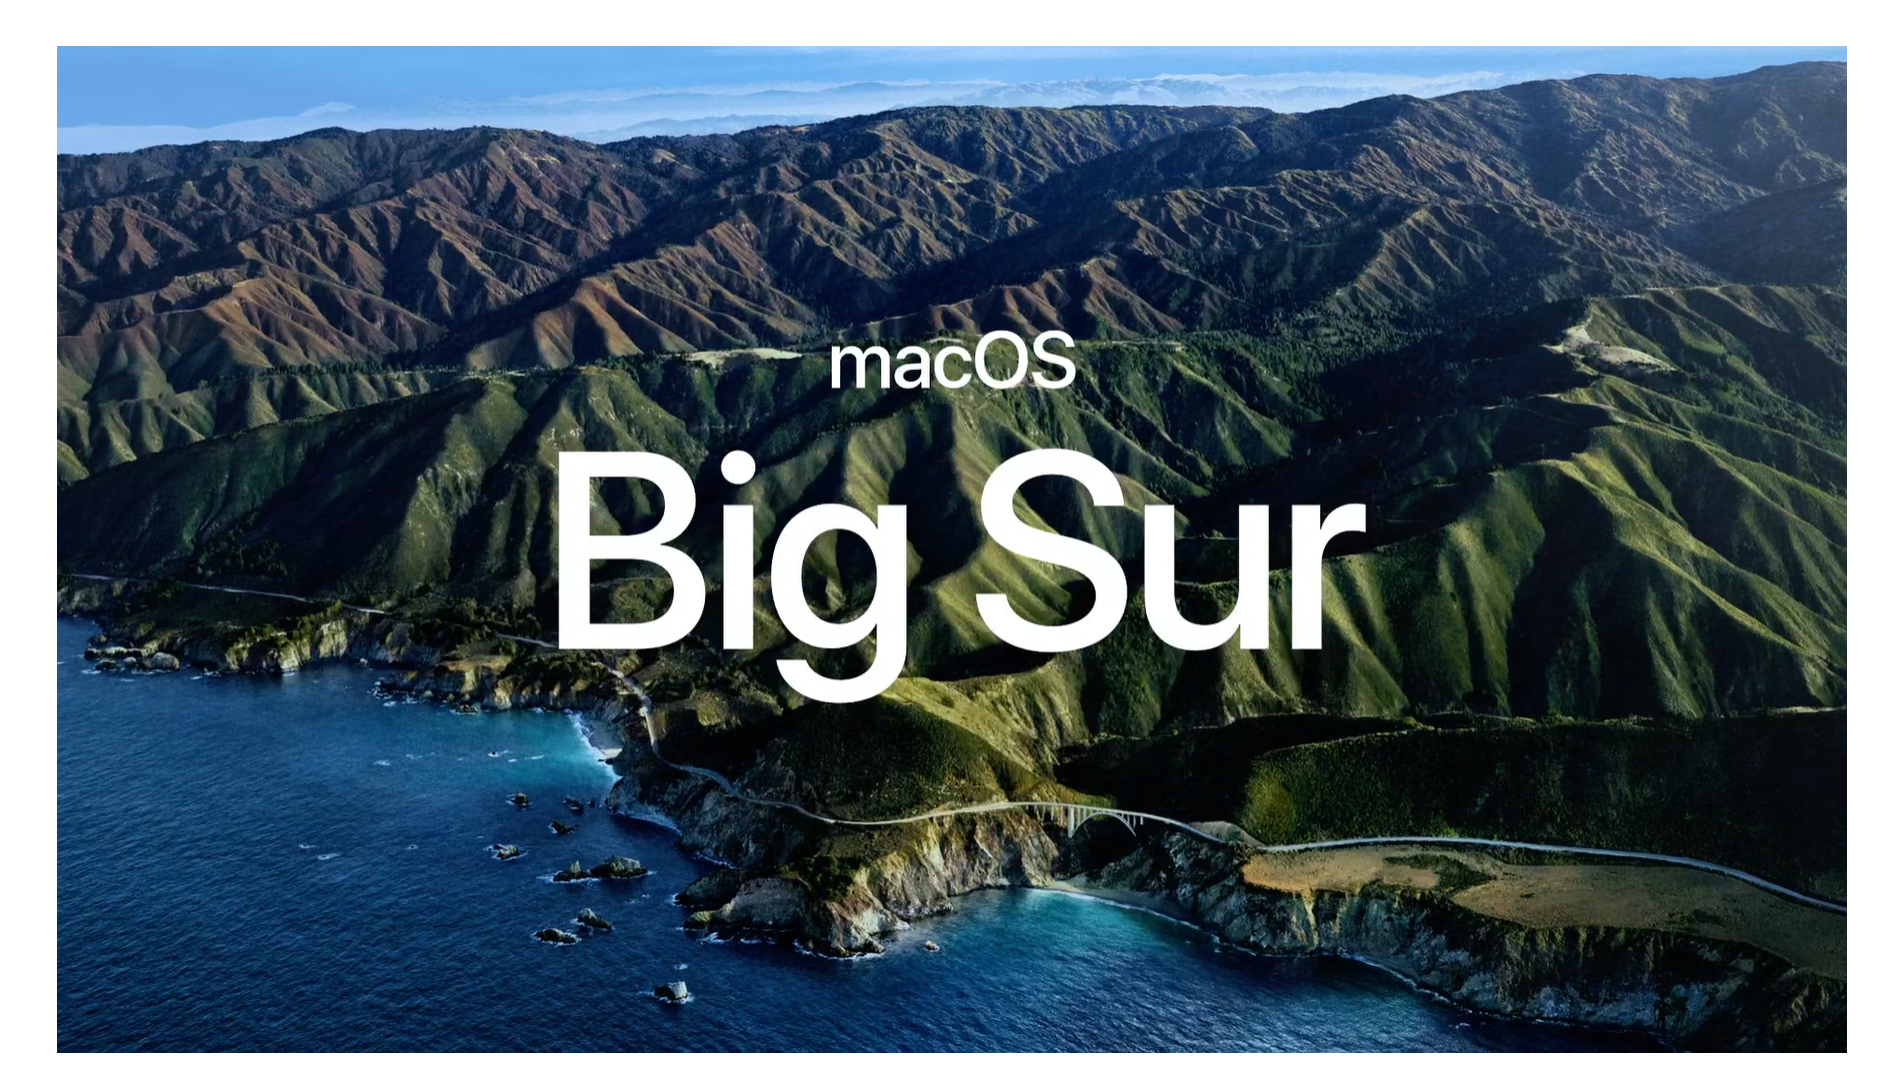 下一版macos 定名为big Sur